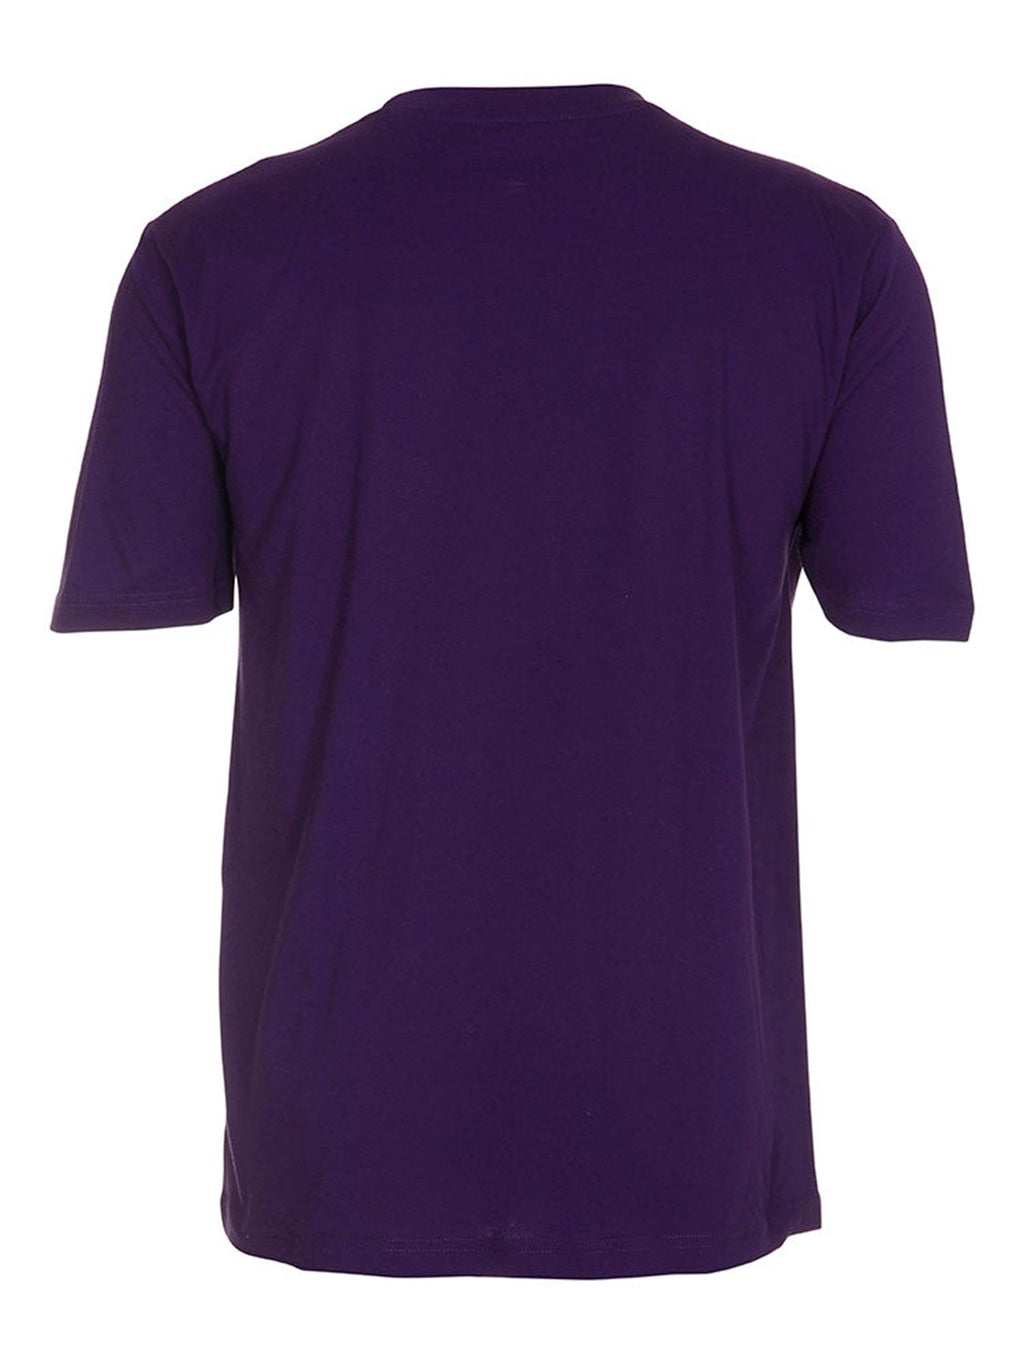 Oversized t-shirt - Violet